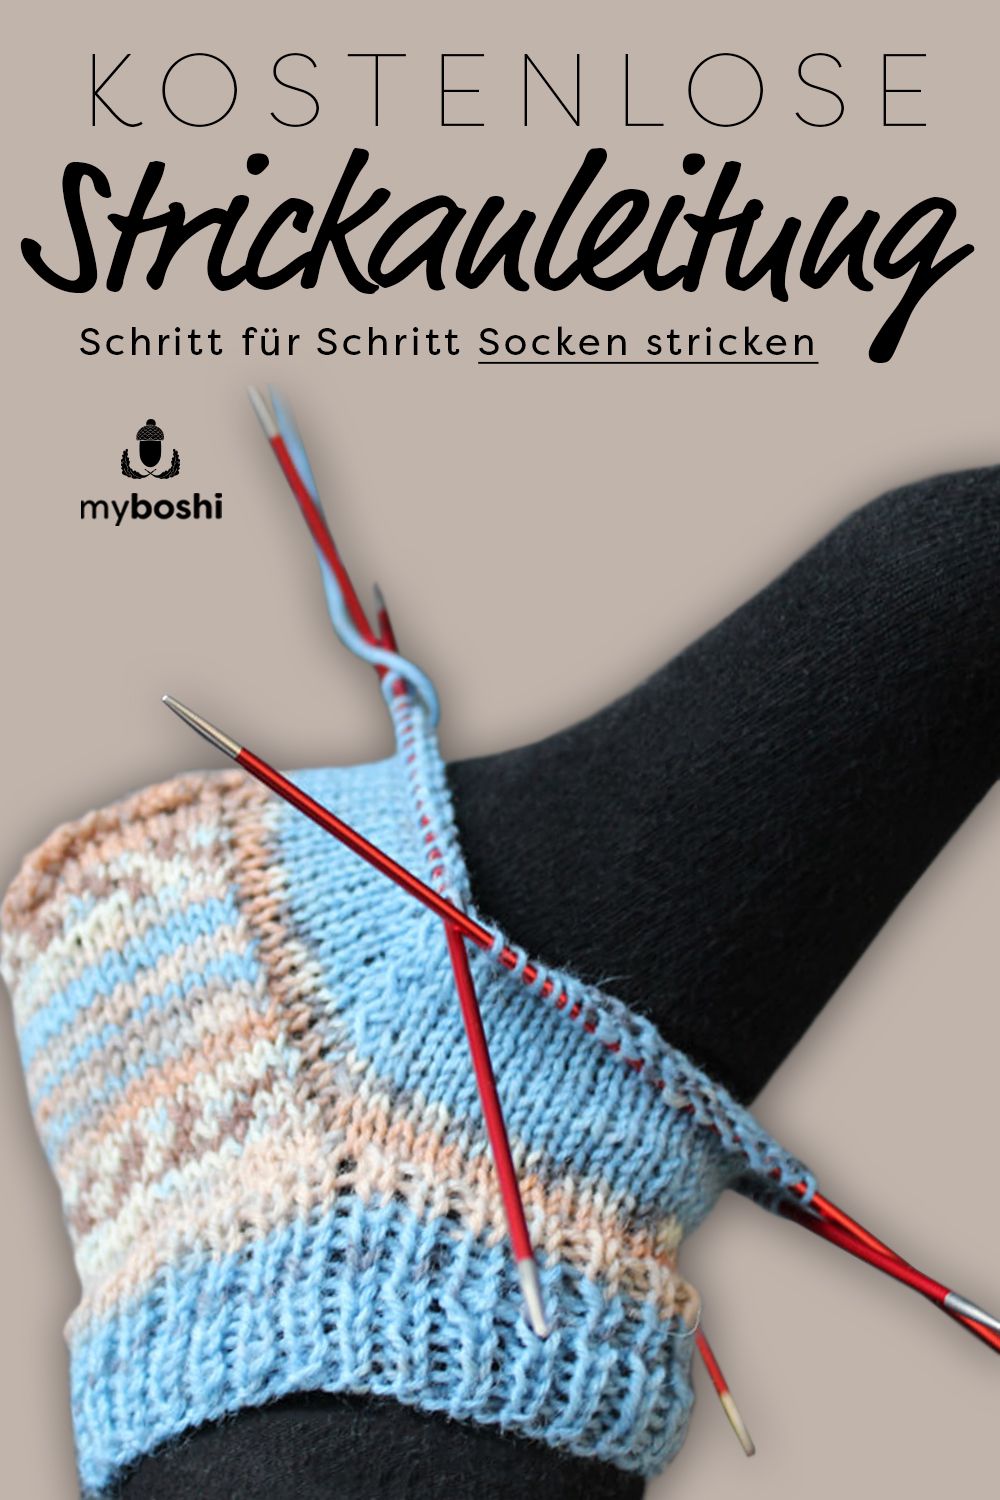 Schritt für Schritt Socken stricken lernen, kostenlos.